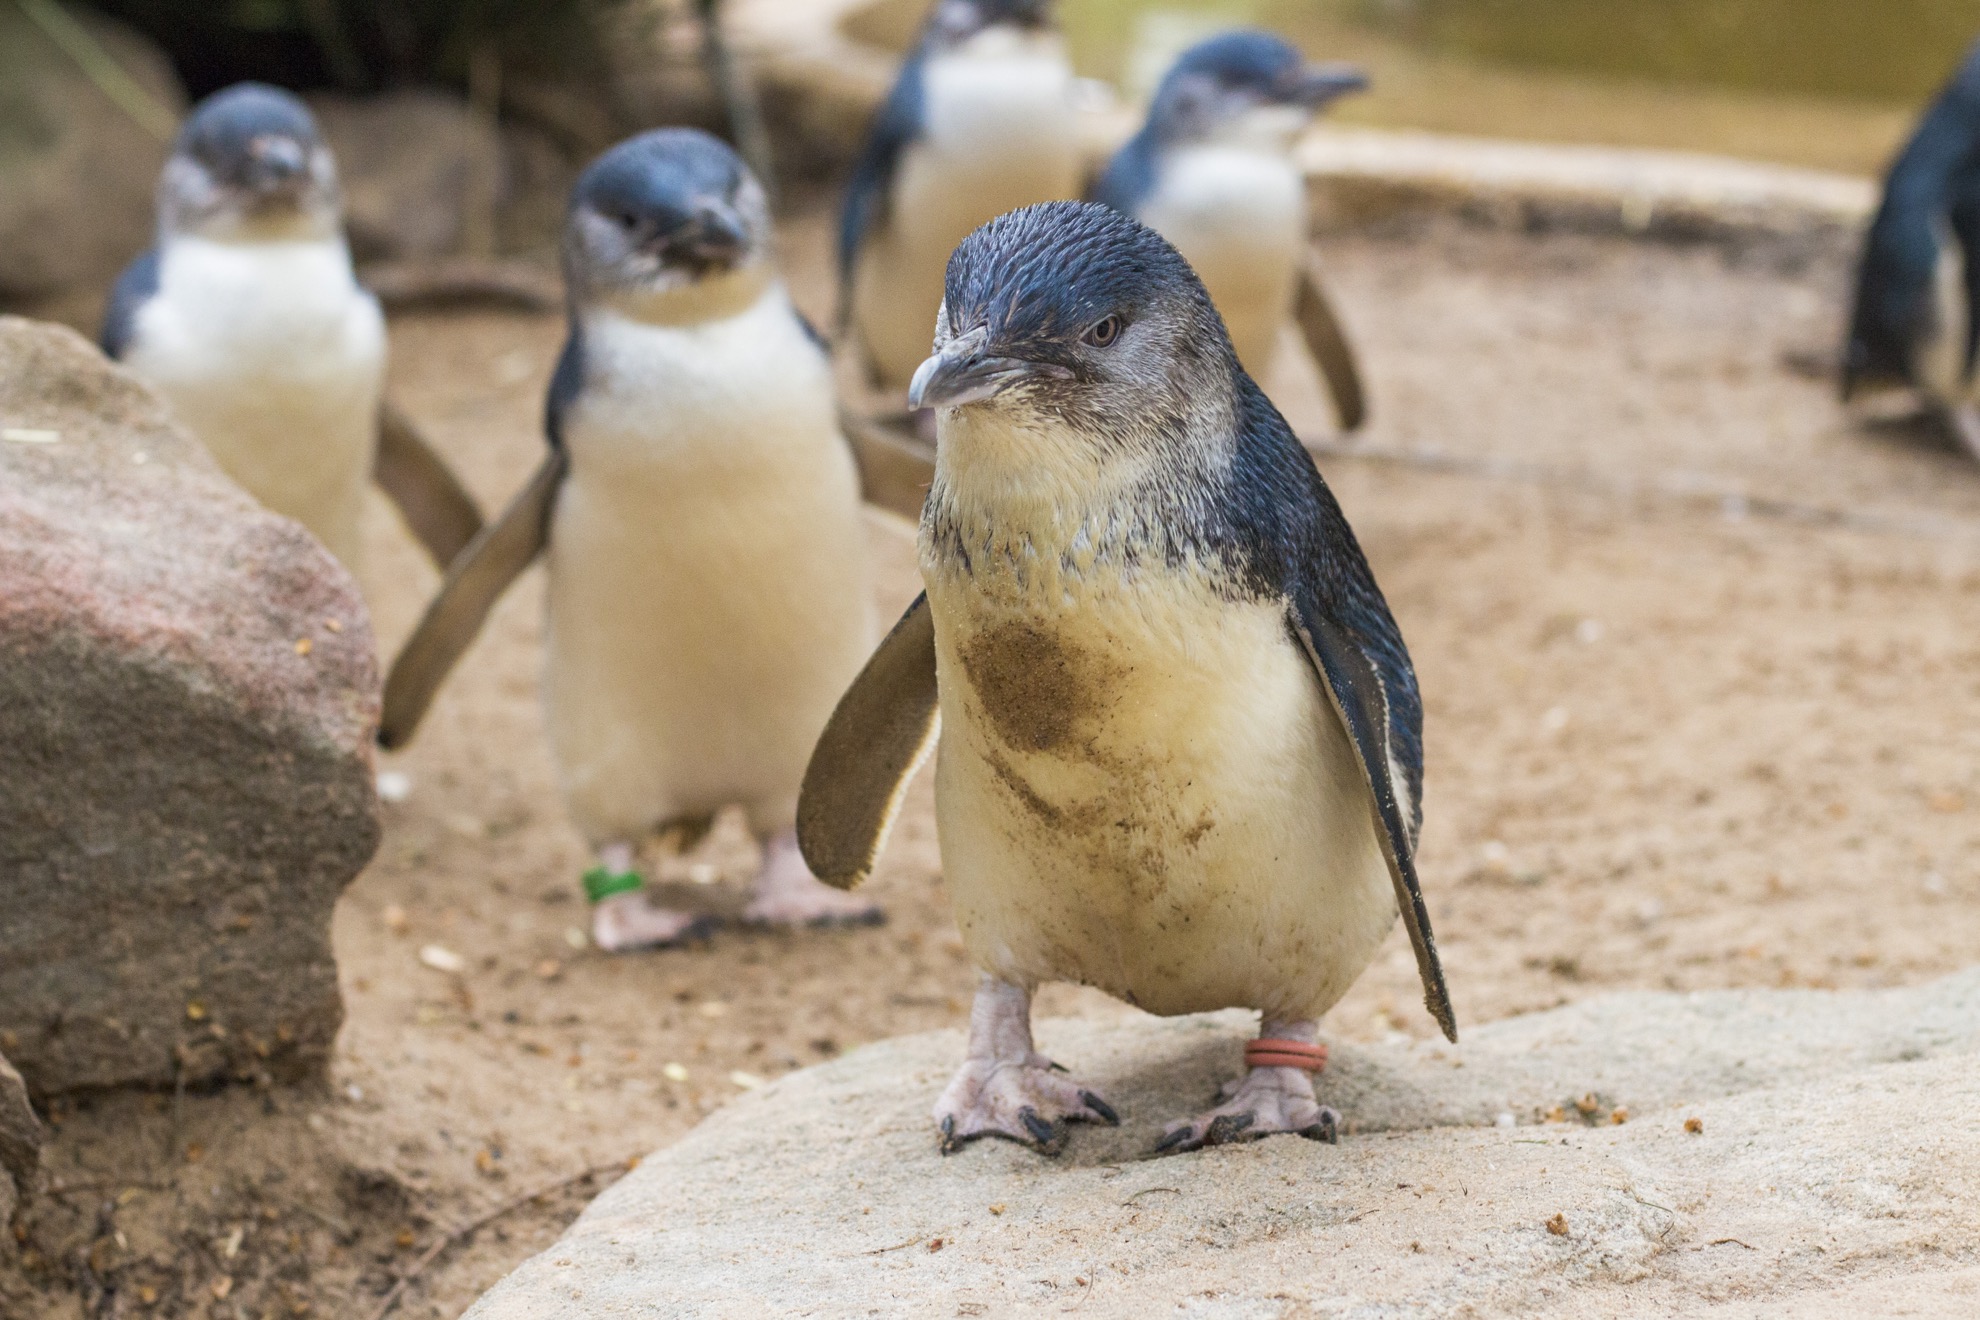 Vea no solo uno o dos, sino cientos de pingüinos de hadas de 12 pulgadas, de 12 pulgadas de altura y de aspecto peludo cuando visite la isla Phillip en Australia. - 11